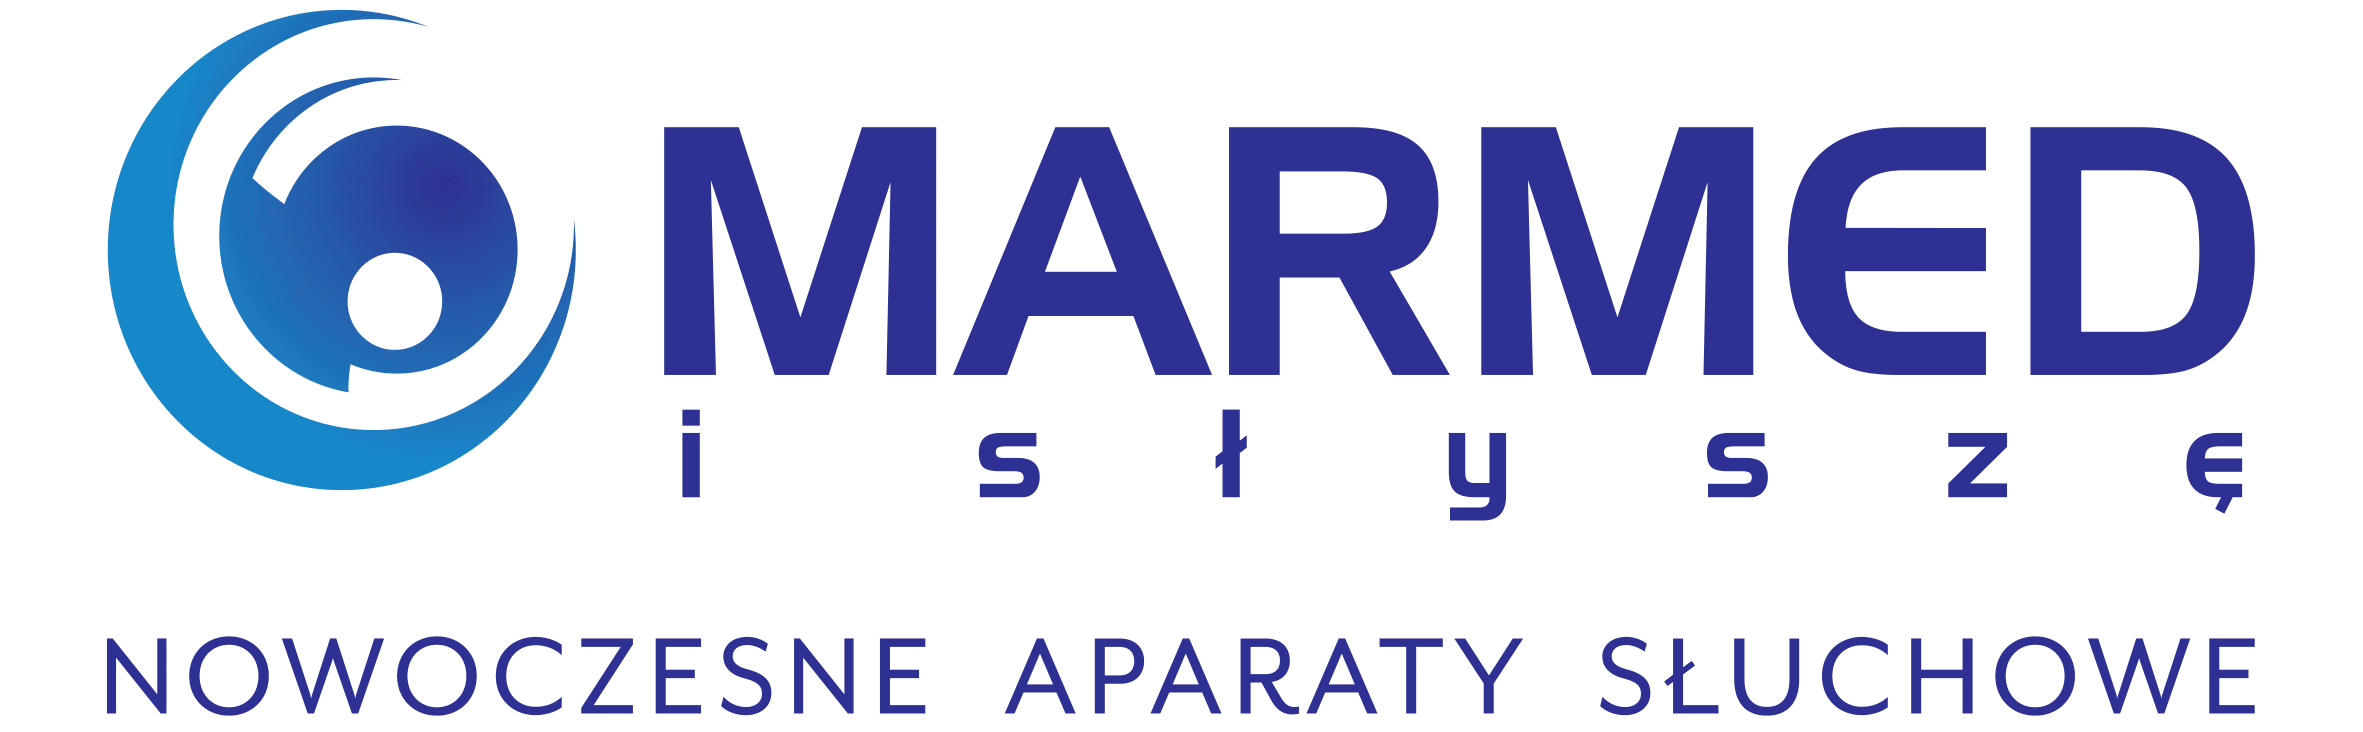 Marmed – Aparaty słuchowe